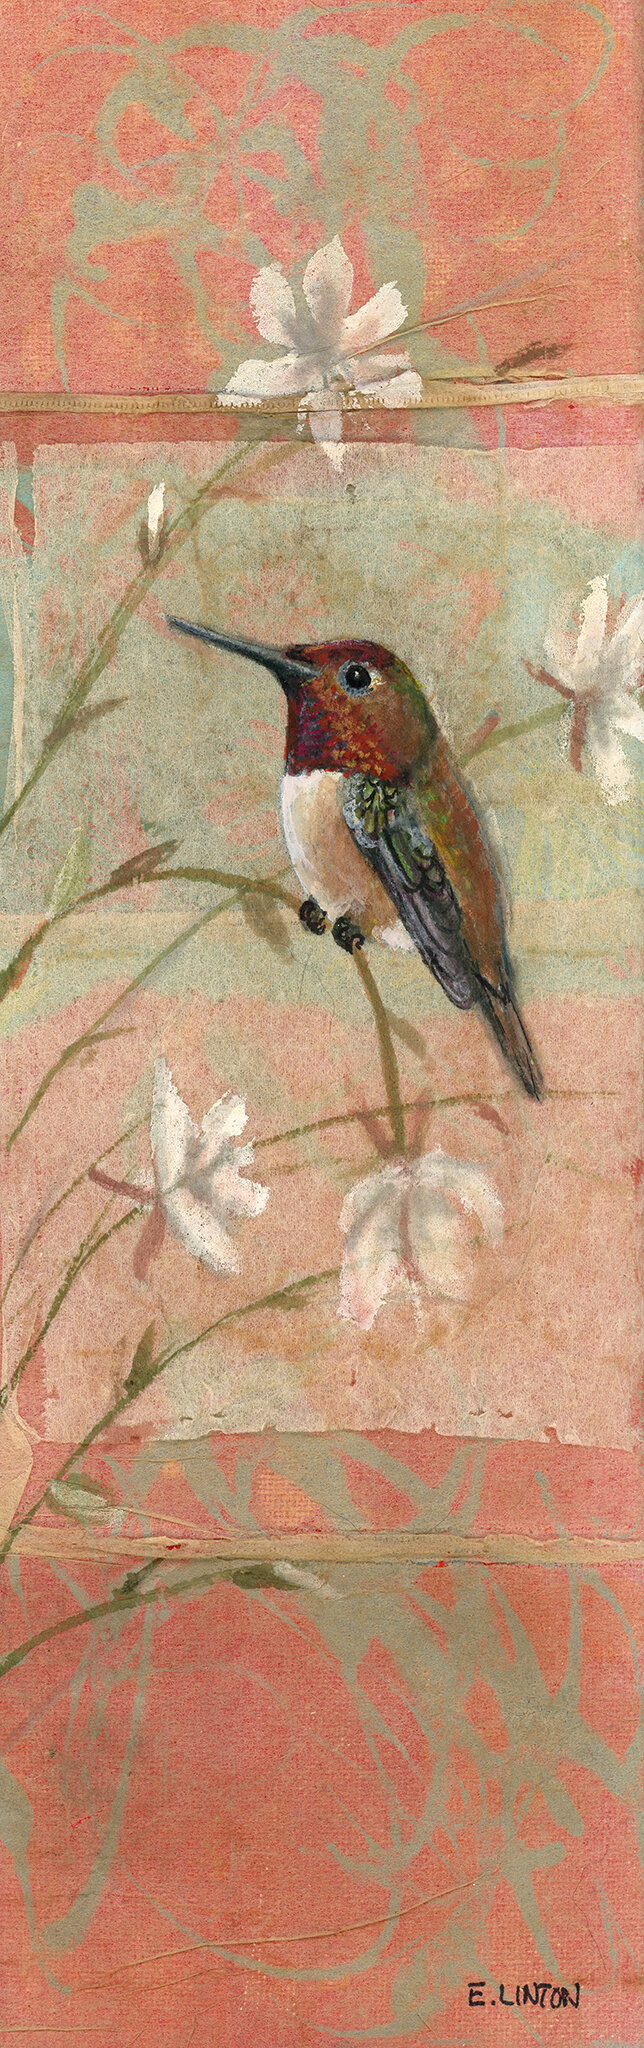 Rufous Hummingbird Long 